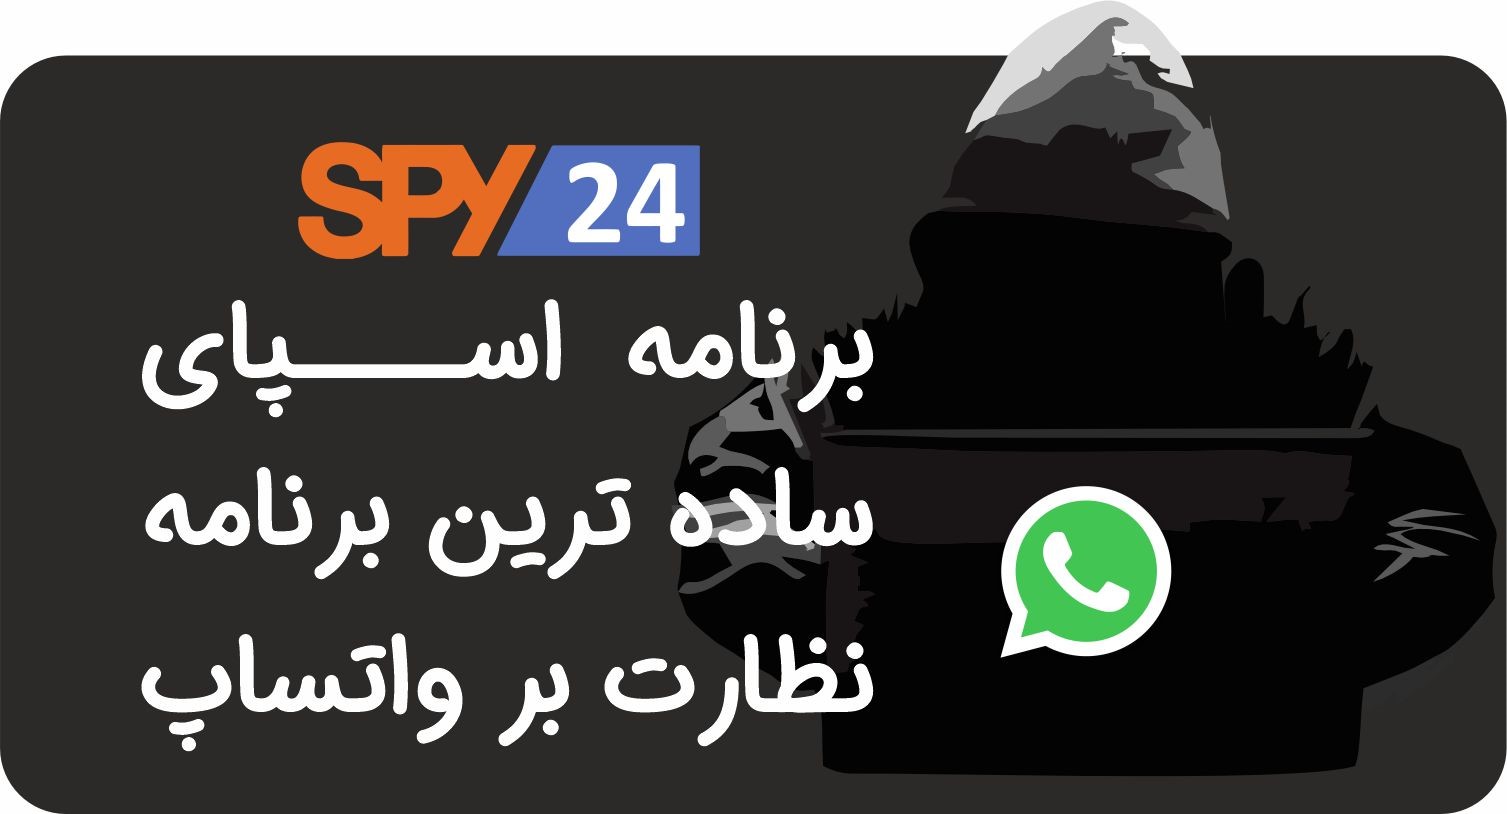 نرم افزار spy24 